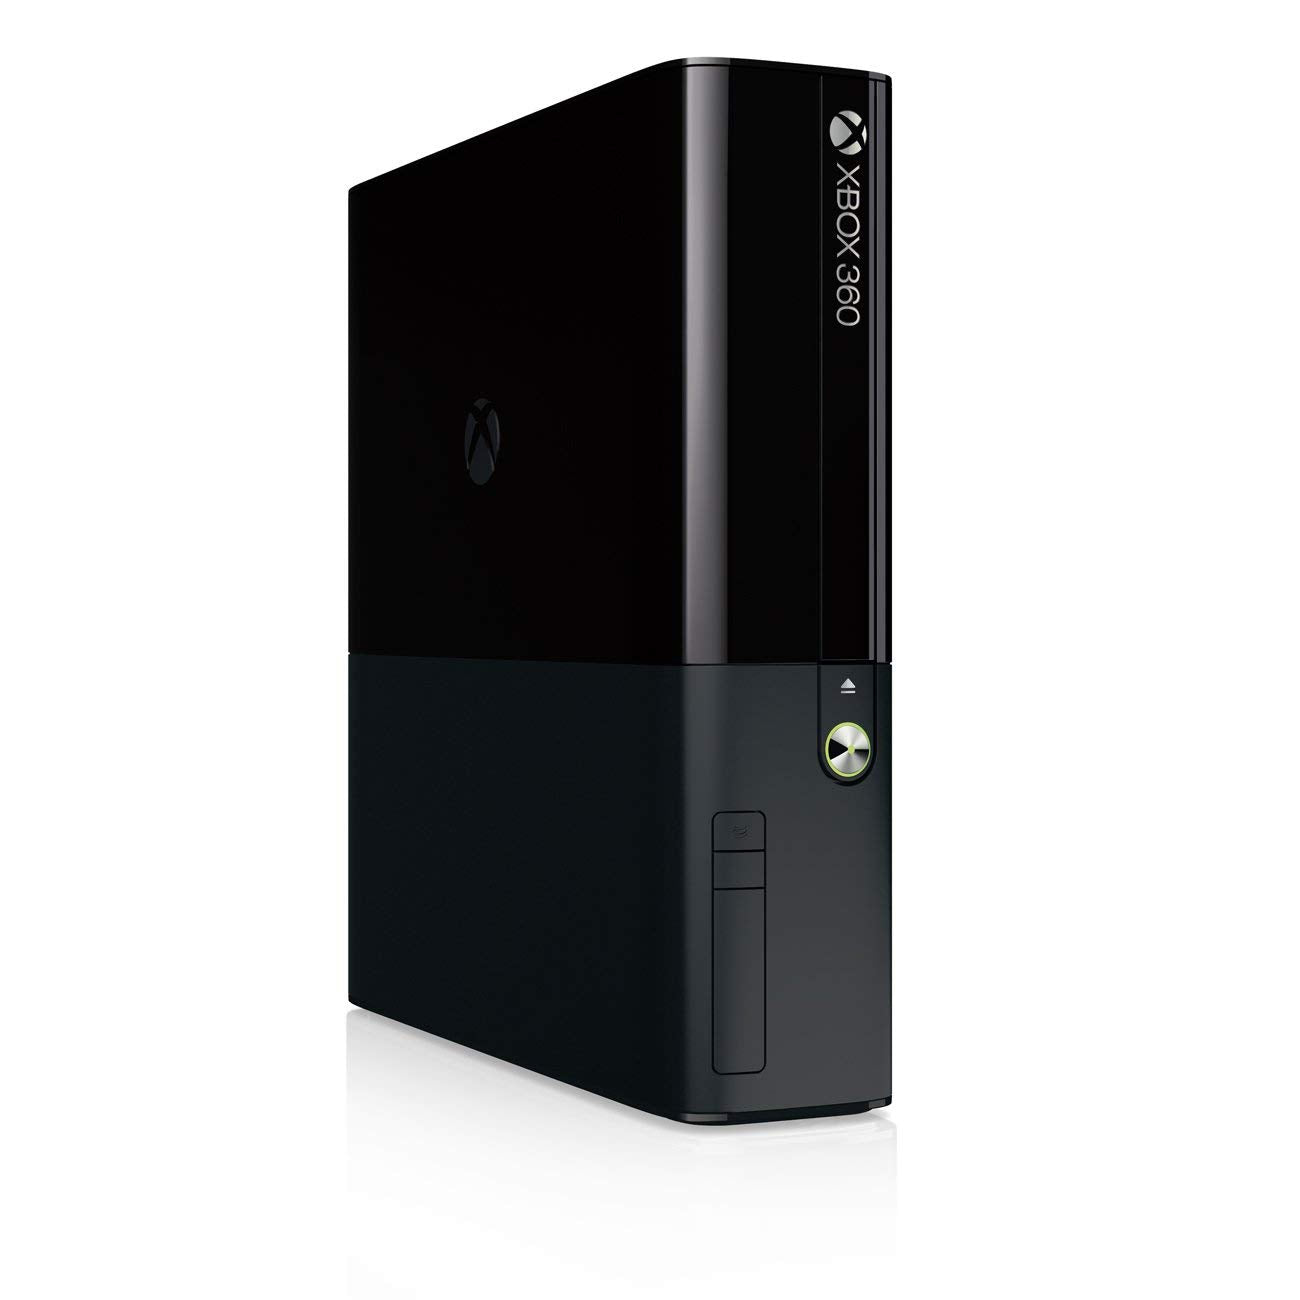 Xbox 360 E 250GB Console - Black